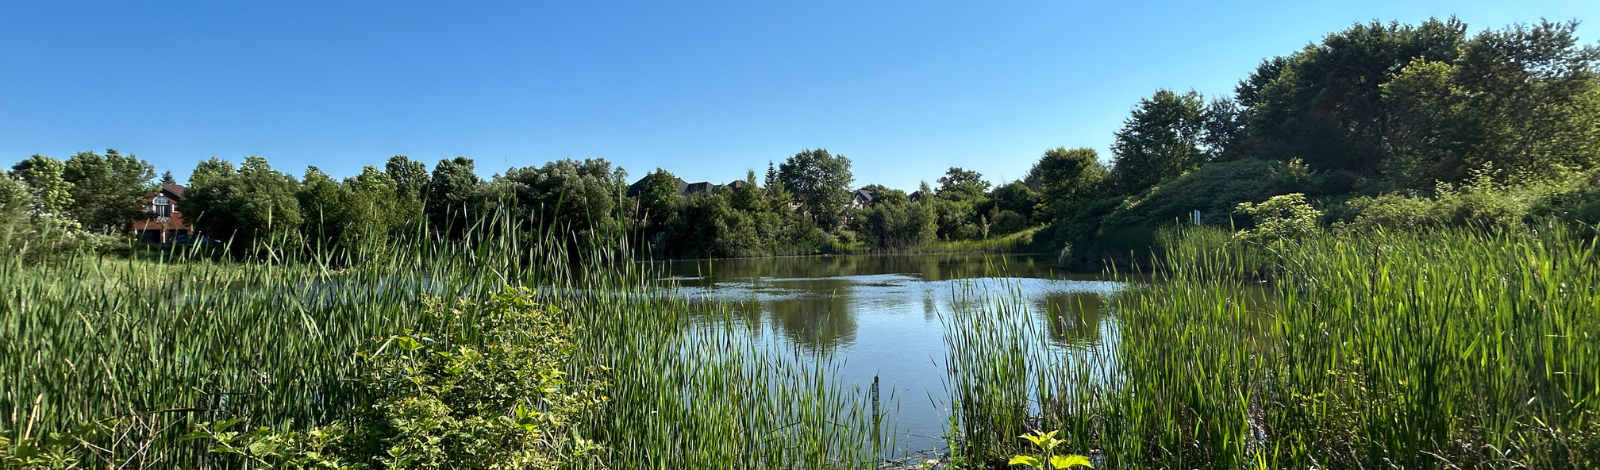 Image of pond at Aurora Community Arboretum